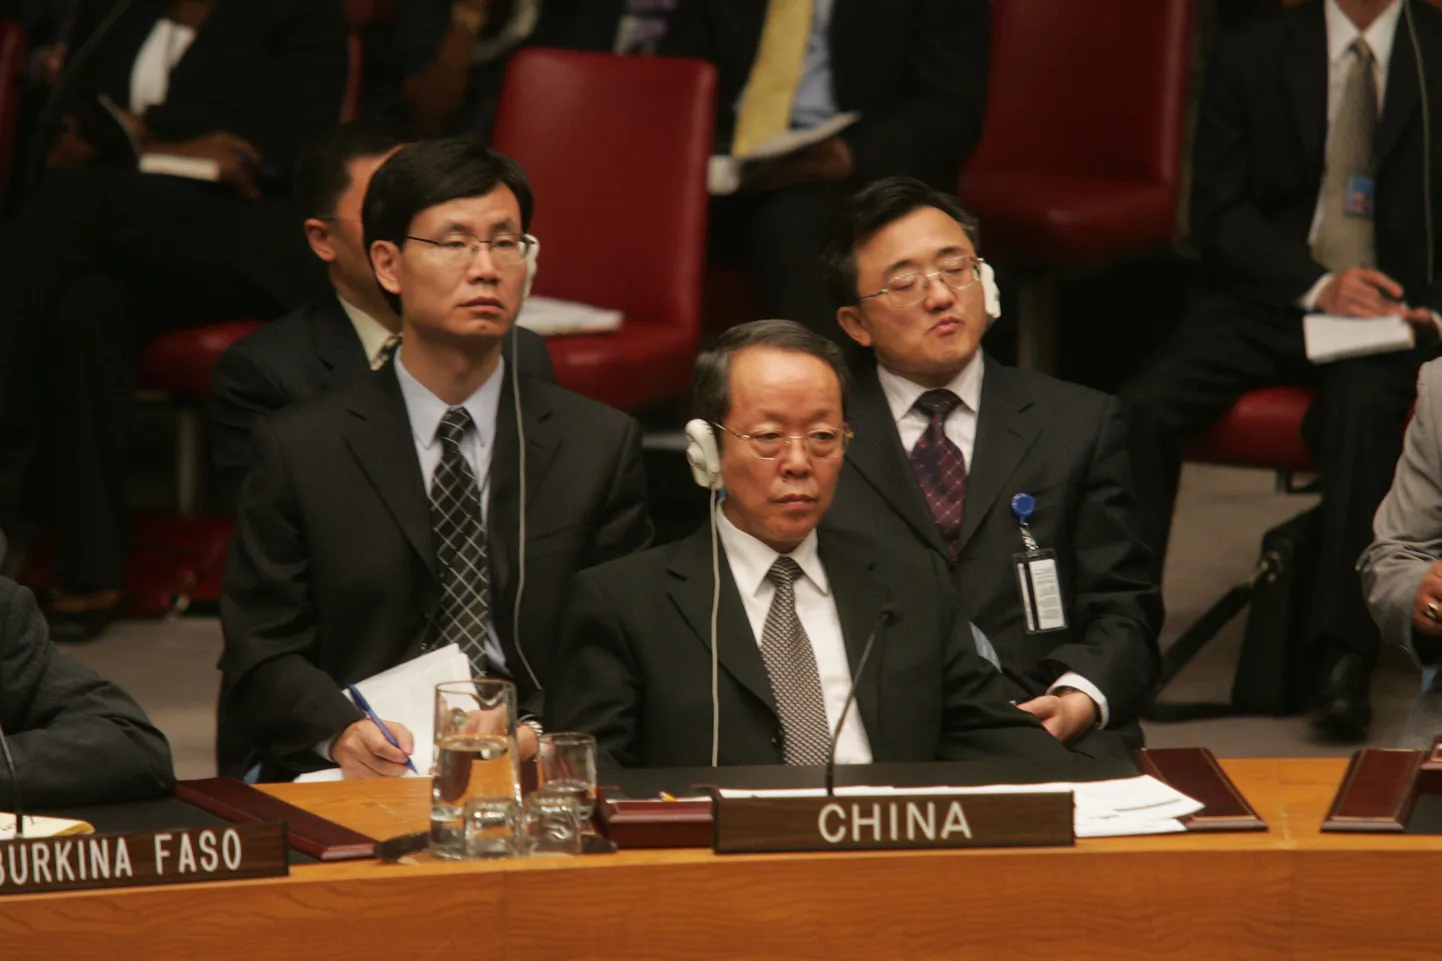 Hiina alaline esindaja ÜRO juures Guangya Wang kuulamas kolleegide sõnavõtte julgeolekunõukogus.